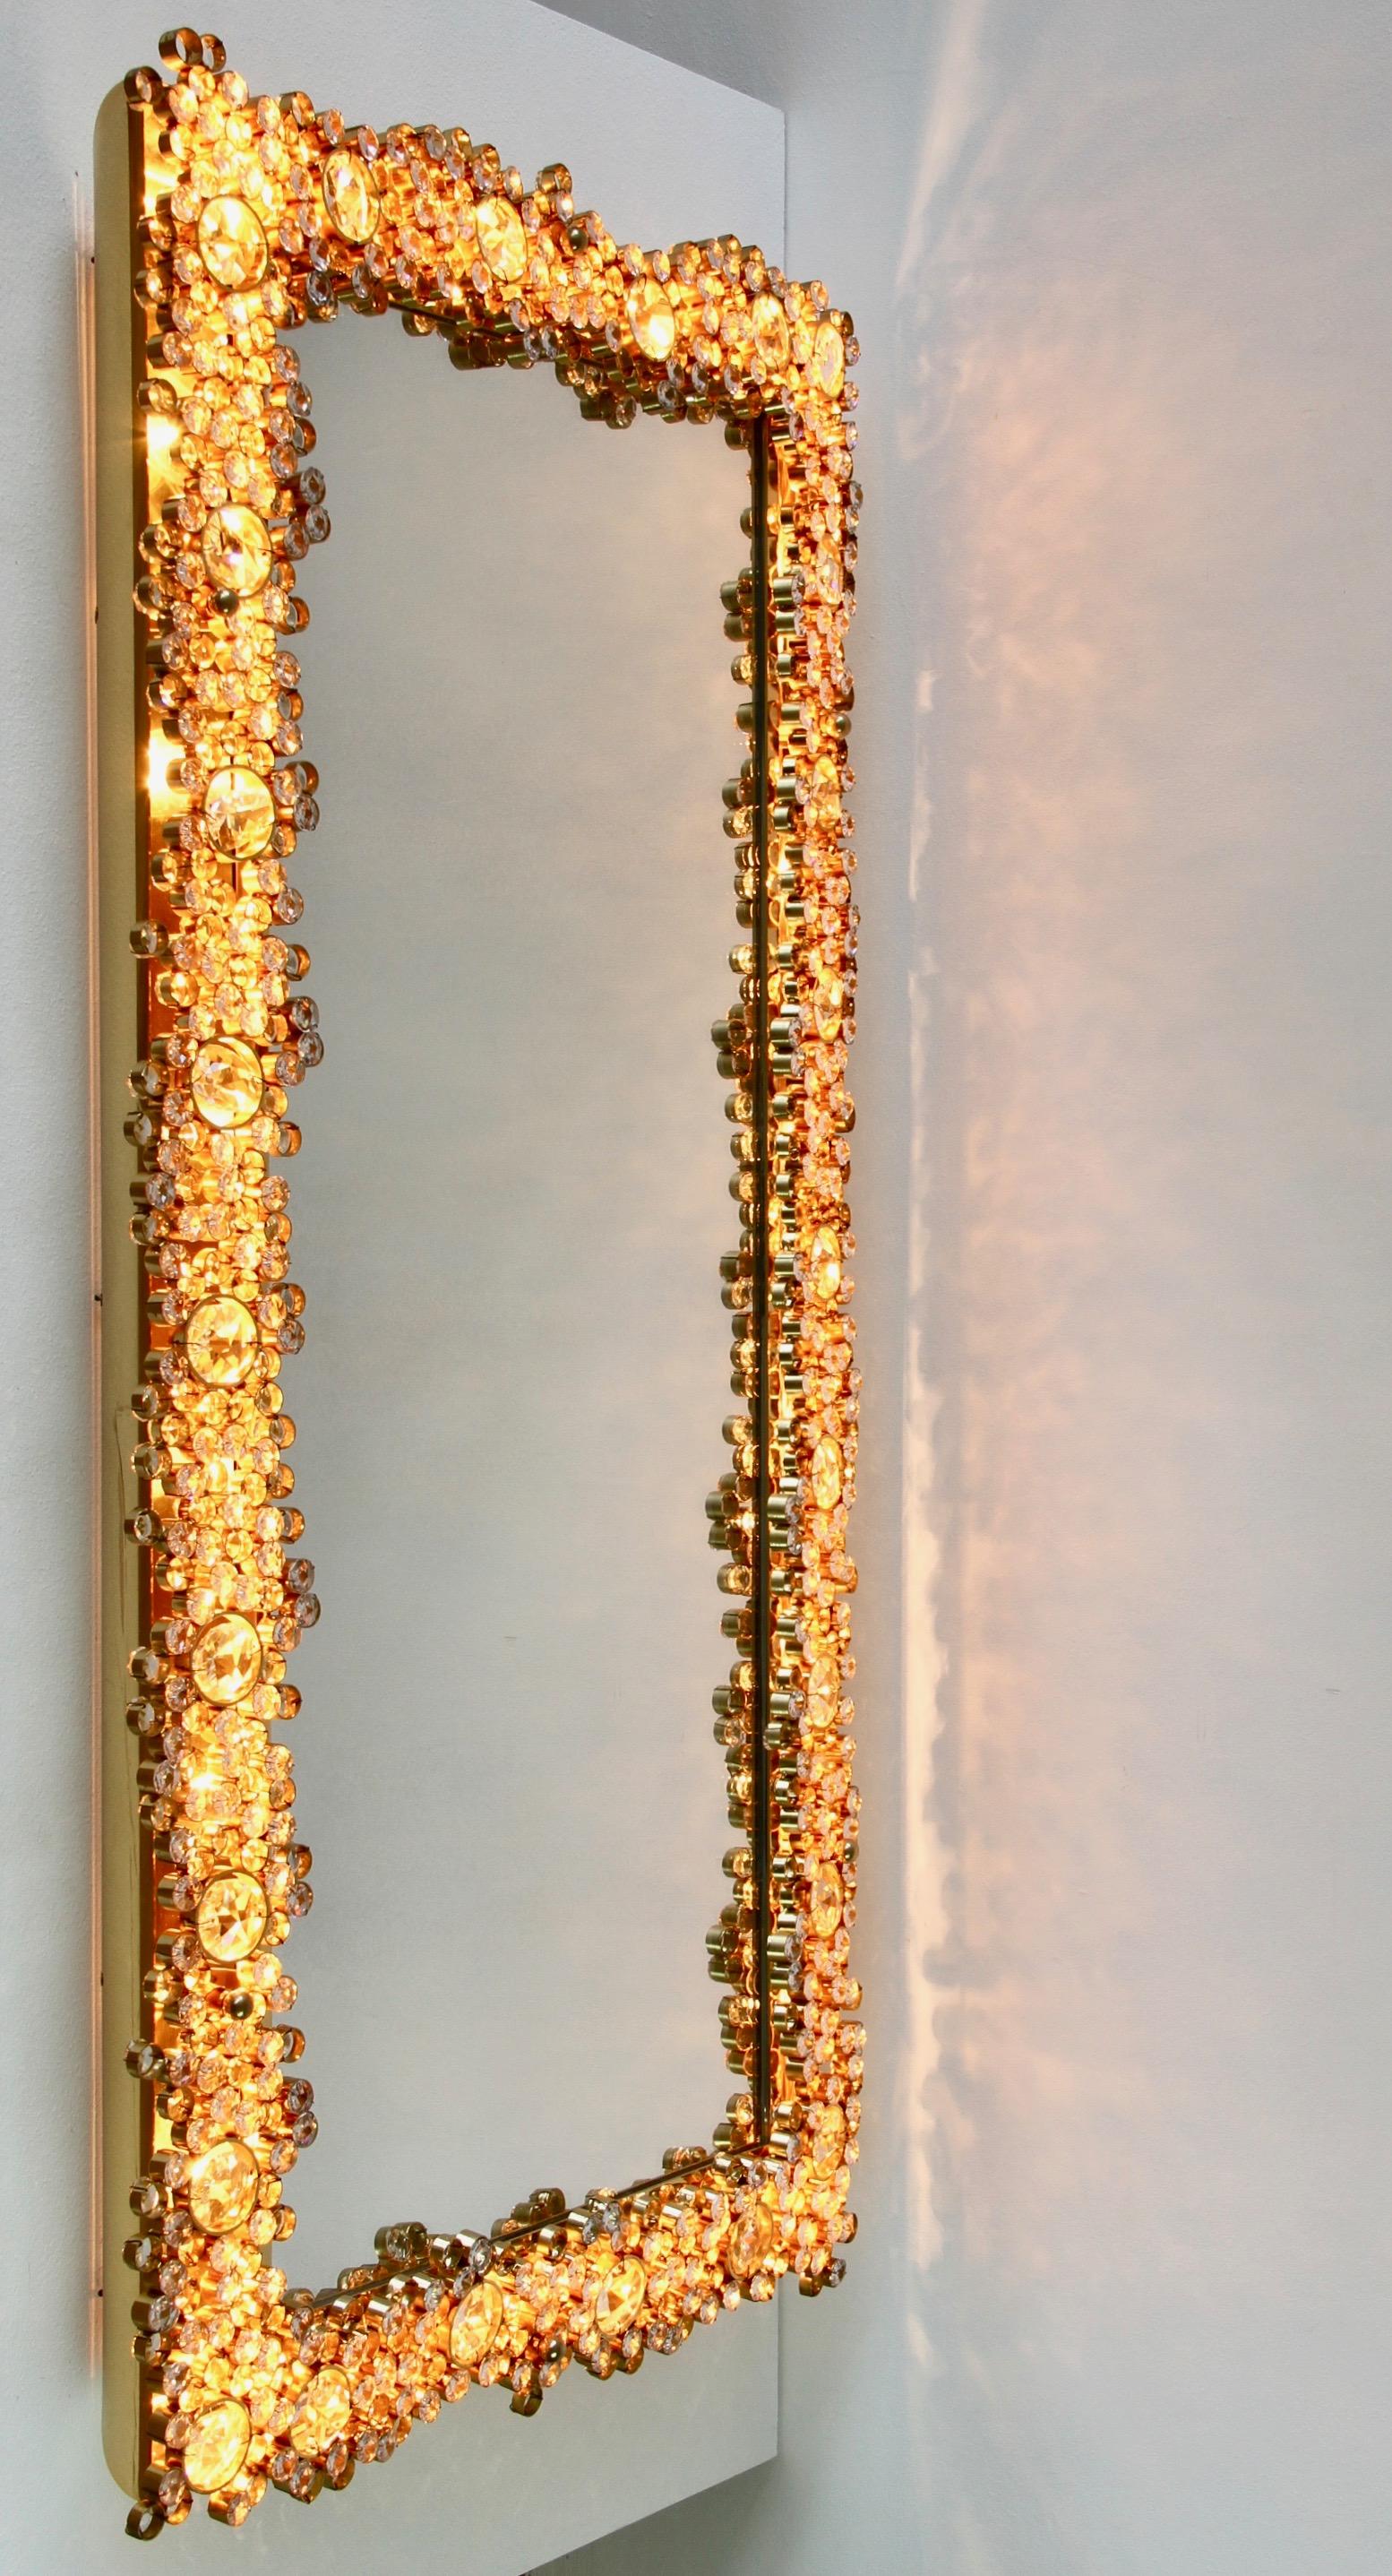 Atemberaubende & große rechteckige Mid-Century vergoldetem Messing und Kristall Wand montiert hinterleuchteten Eitelkeit oder Flur Spiegel von Palwa, Deutschland, ca. 1965-1975. Es gibt keine bessere Kombination als Gold und Kristall für den